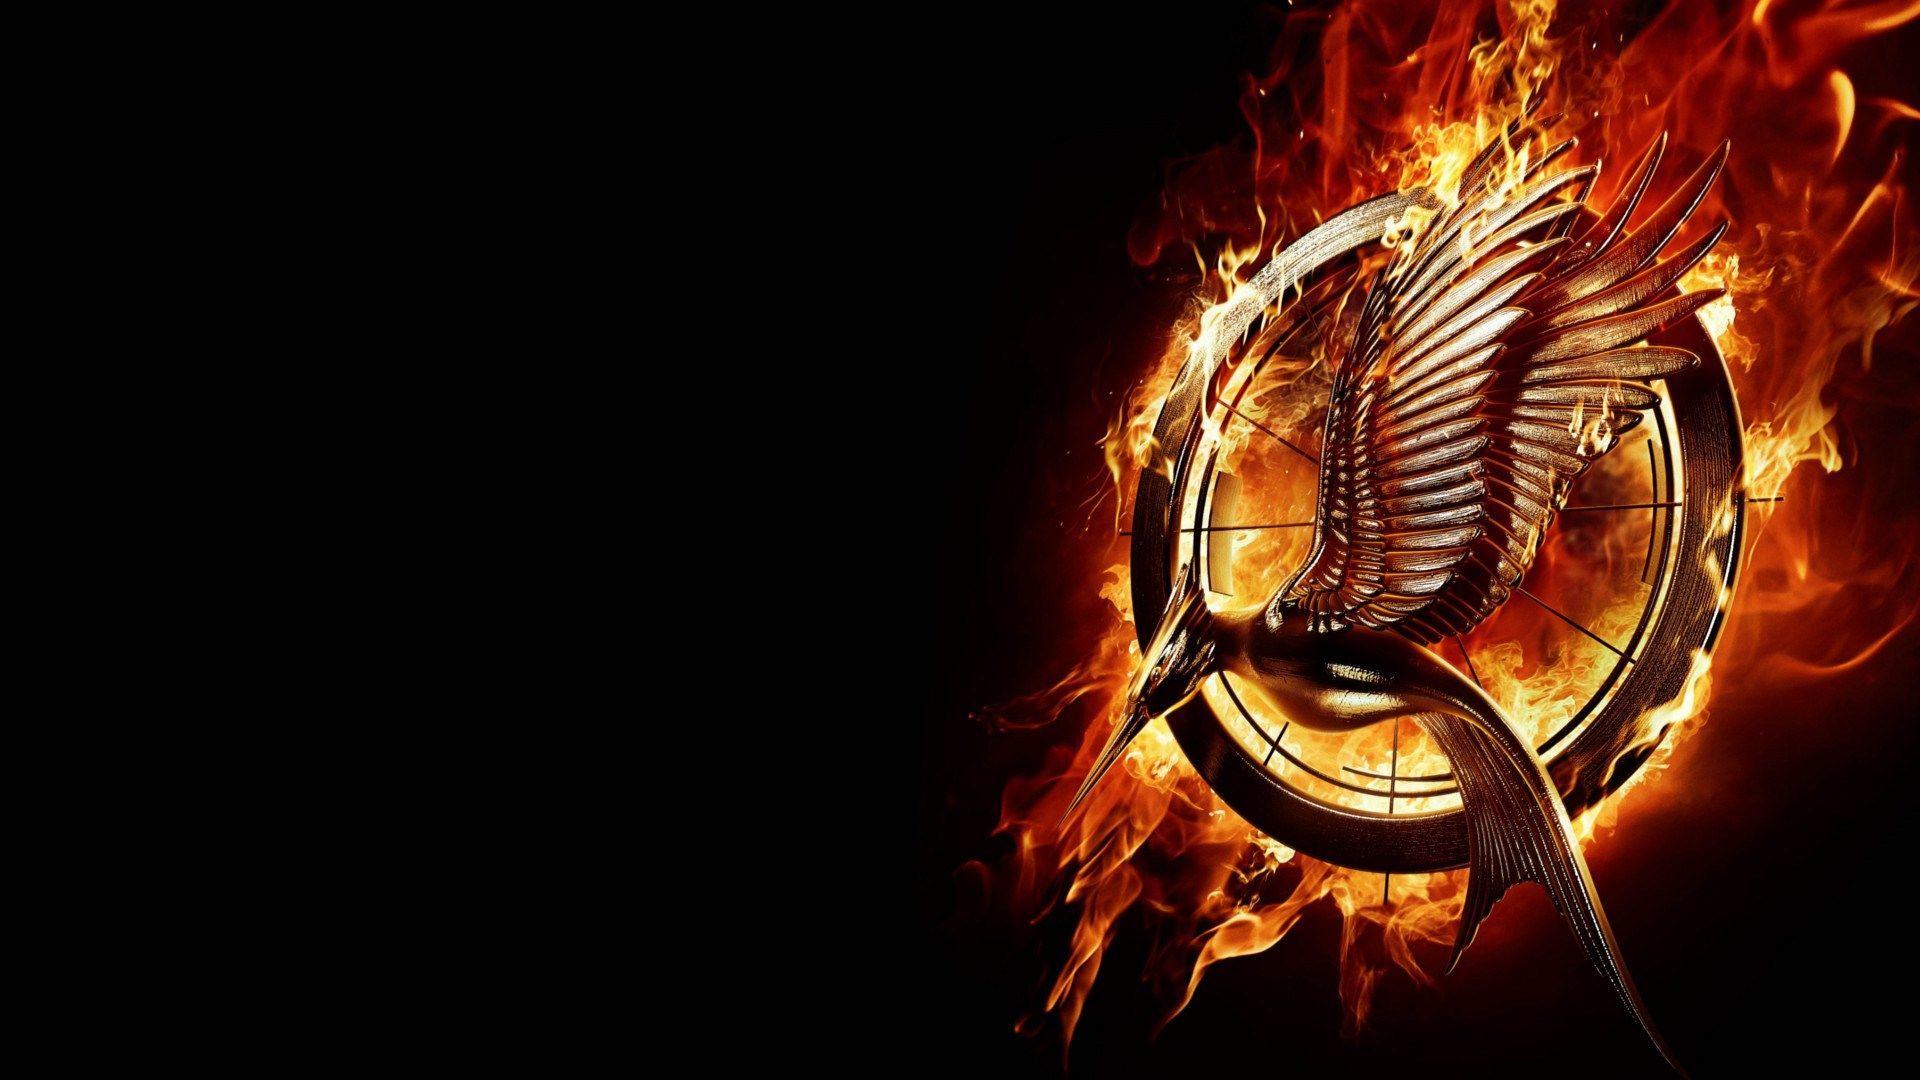 2017 03 07 Hunger Games Catching Fire Wallpaper 1080p Windows